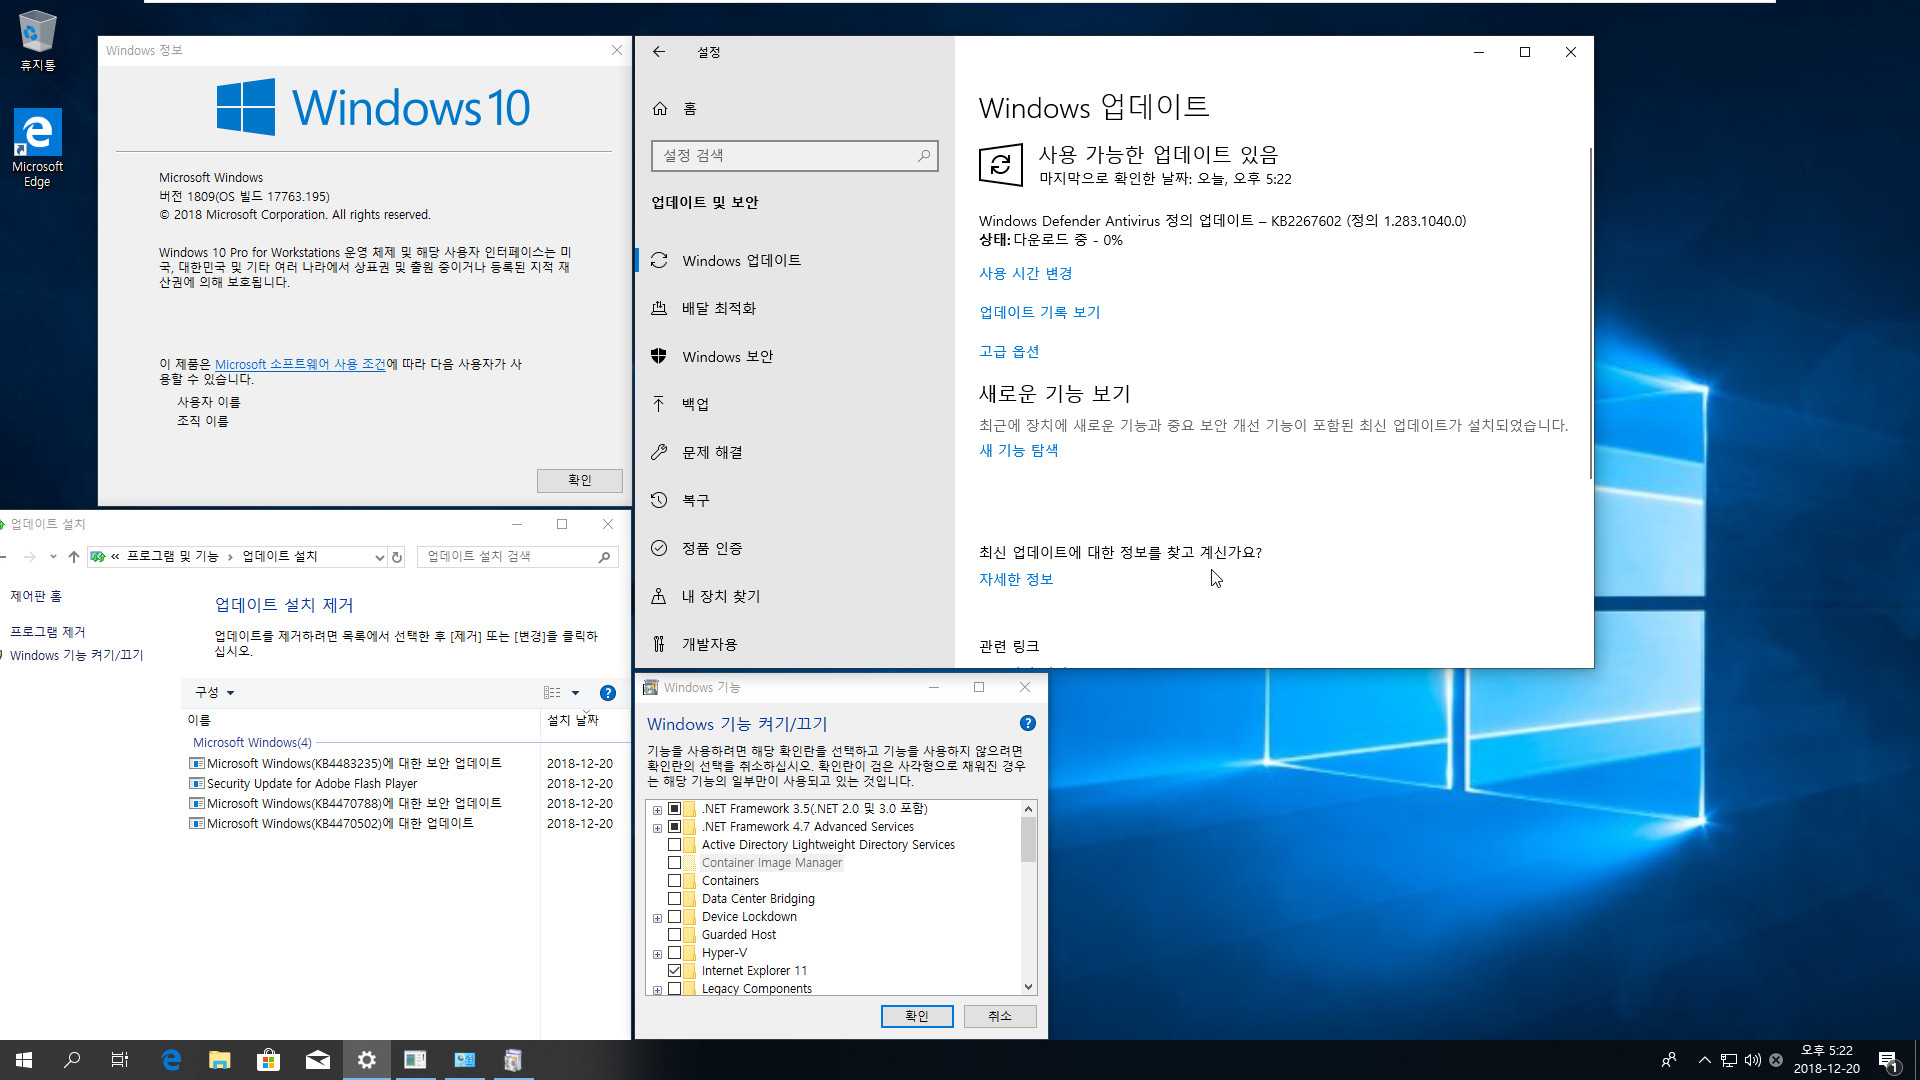 Windows 10 수시 업데이트 나왔네요 2018-12-20 [한국시간] - Windows 10 버전1809용 누적 업데이트 KB4483235 (OS 빌드 17763.195) 통합중 입니다 2018-12-20_172227.jpg